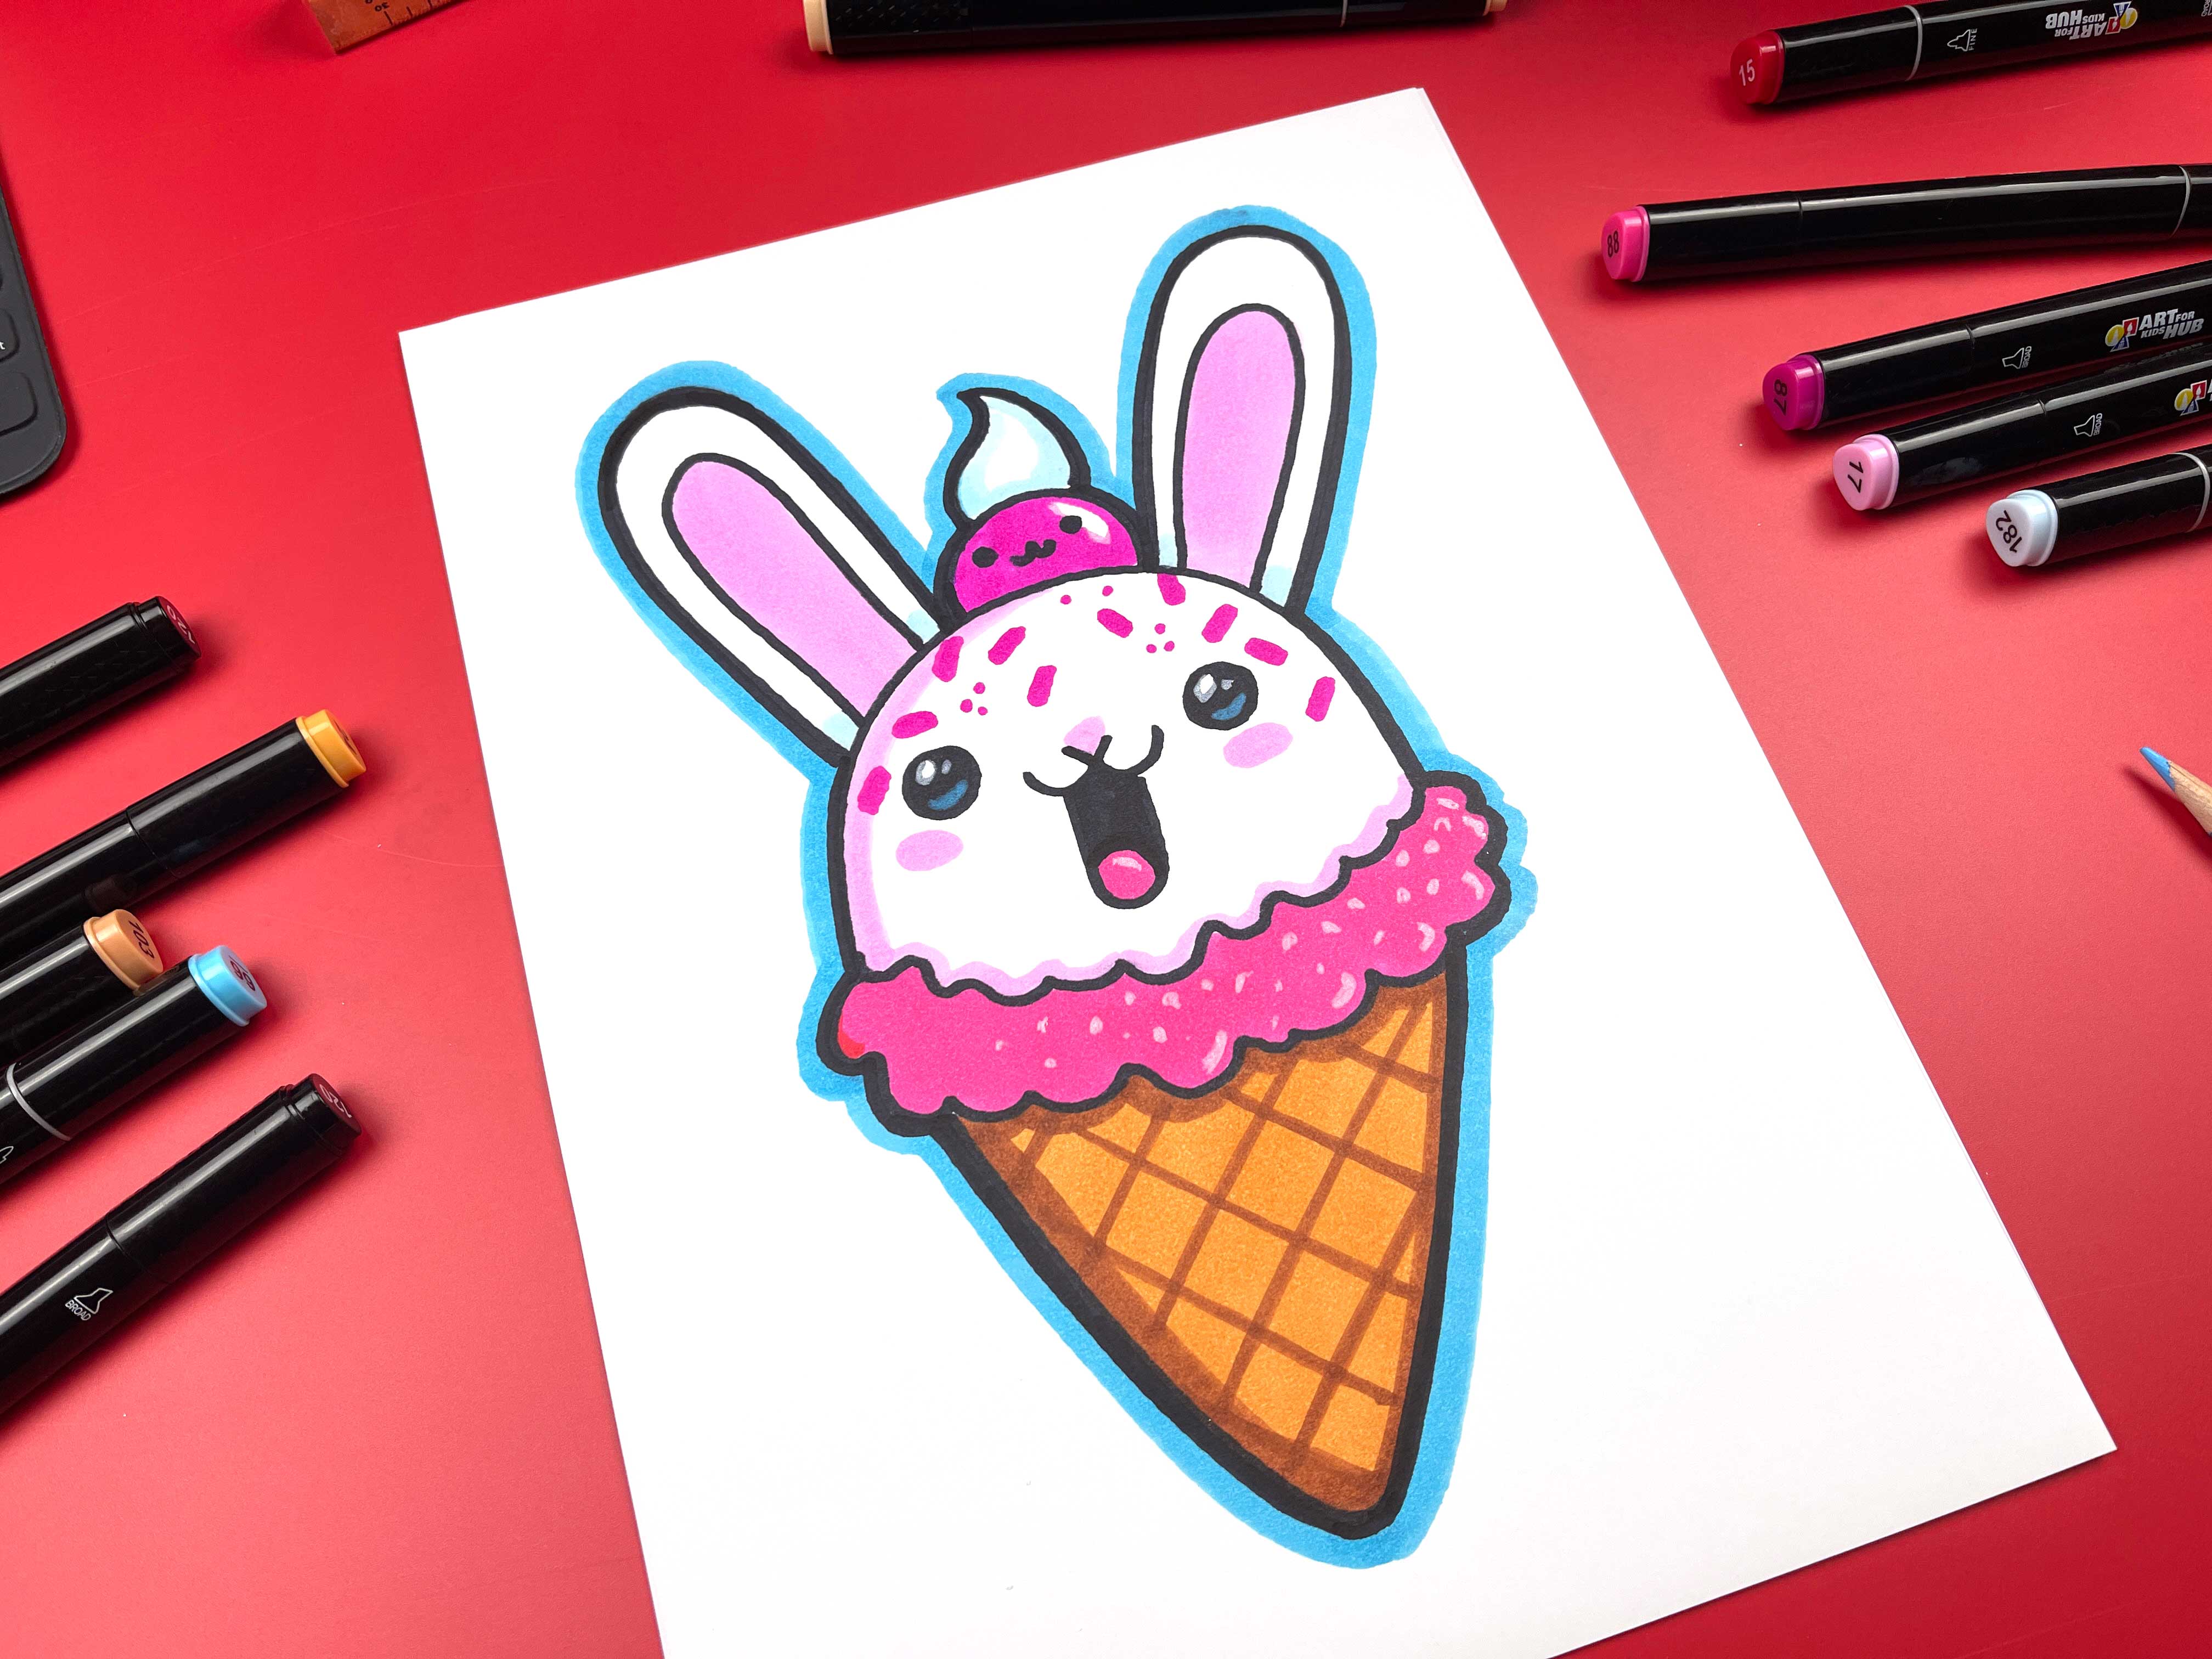 How to Draw an Ice Cream Sundae Easy and Cute - YouTube-saigonsouth.com.vn